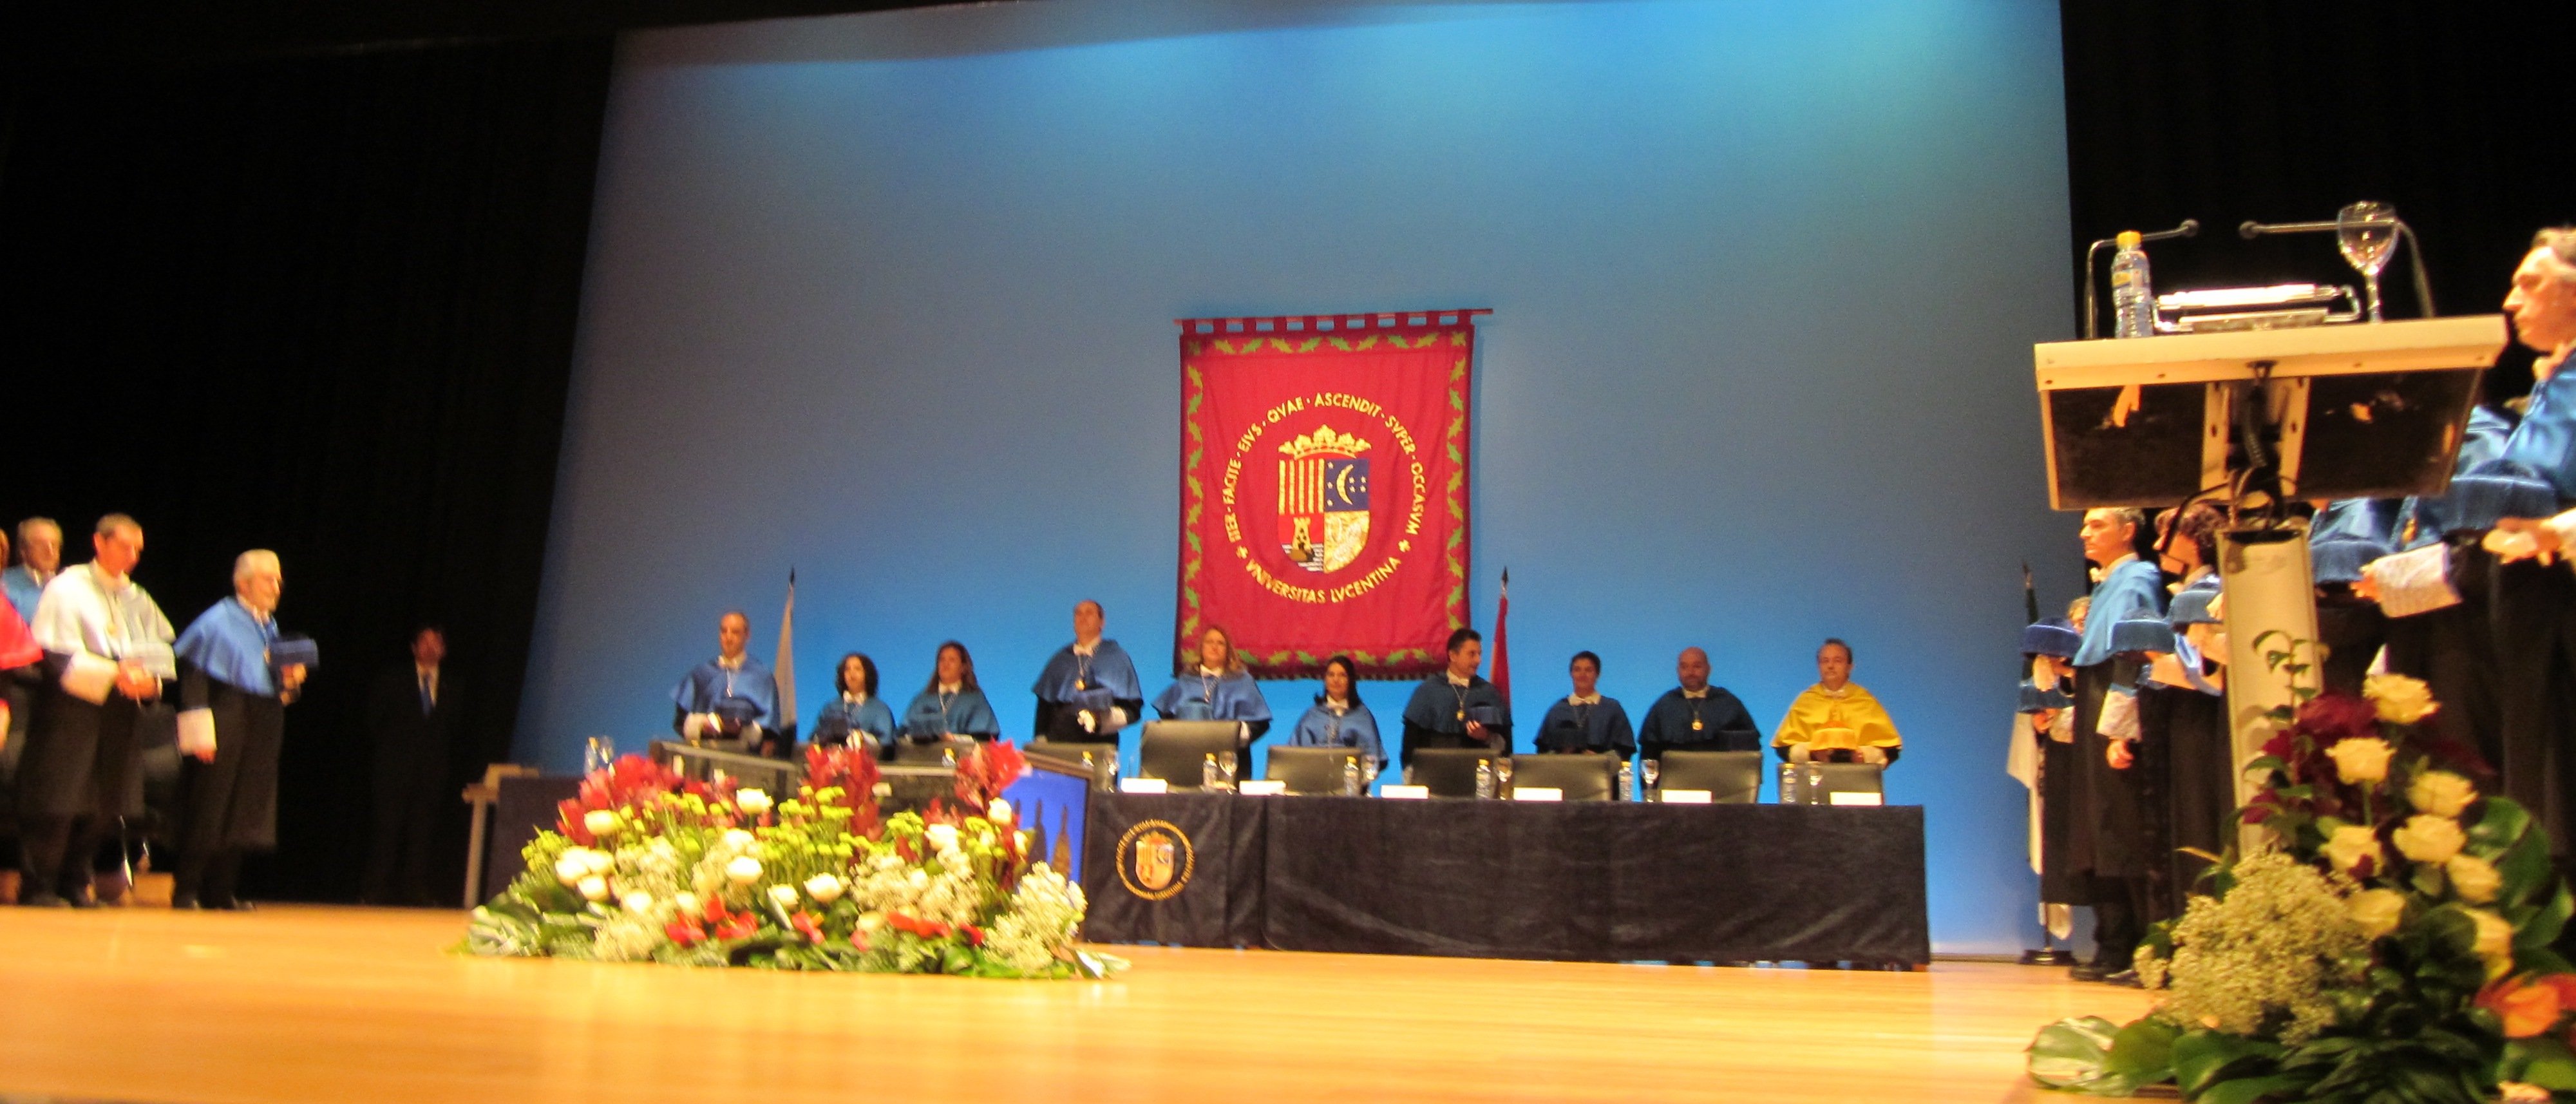 Premio San Alberto Magno 2011 de la Universidad de Alicante.